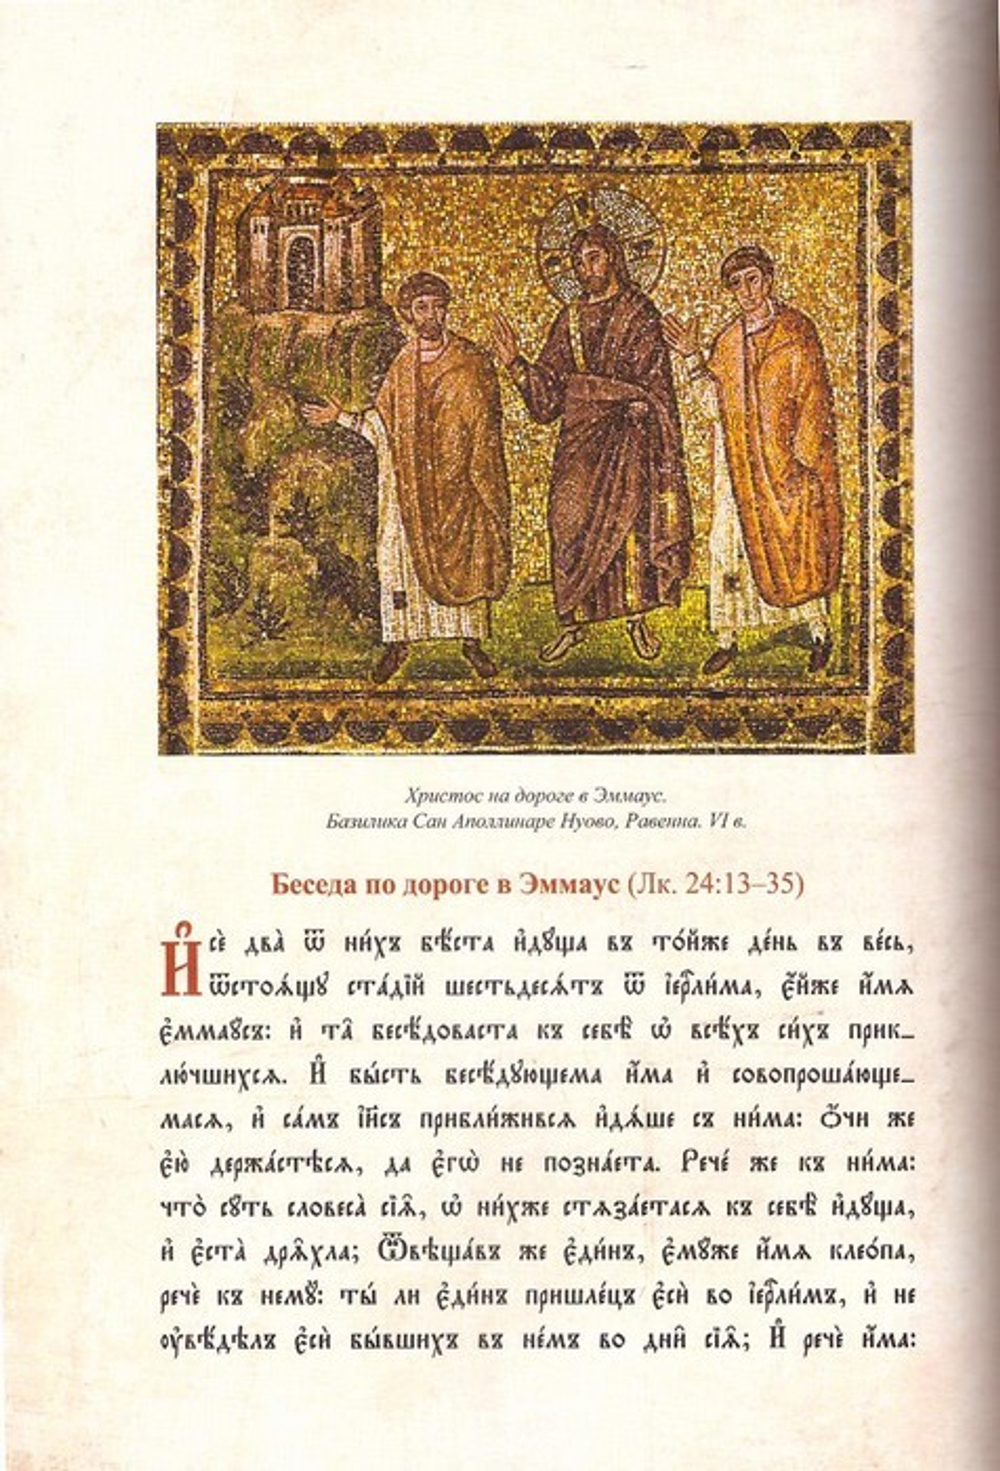 Литургическое  предание православной Церкви. Православные таинства и монашеский постриг